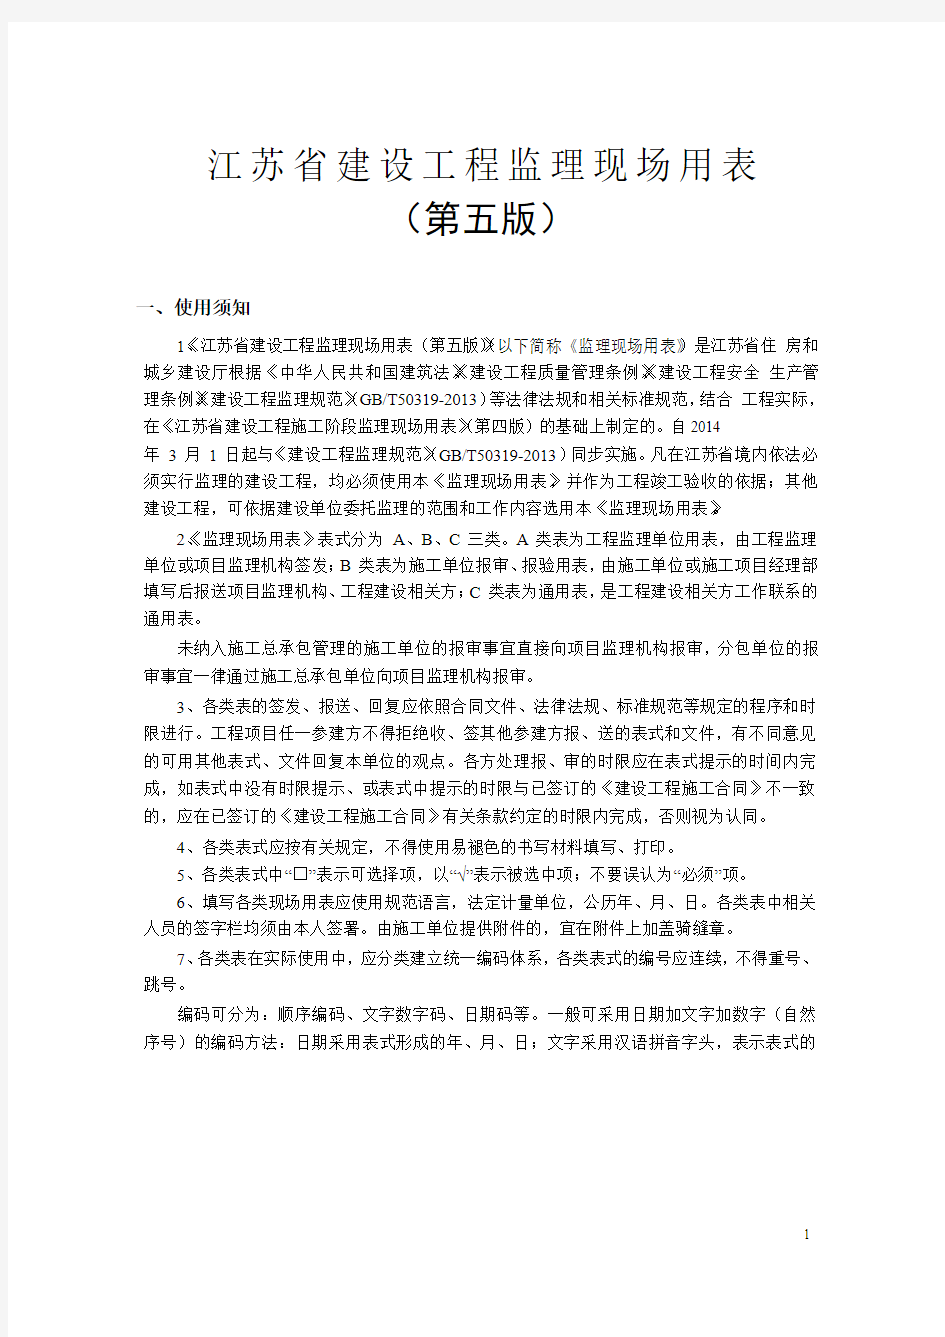 江苏省2014年3月1日新版监理用表(第五版)